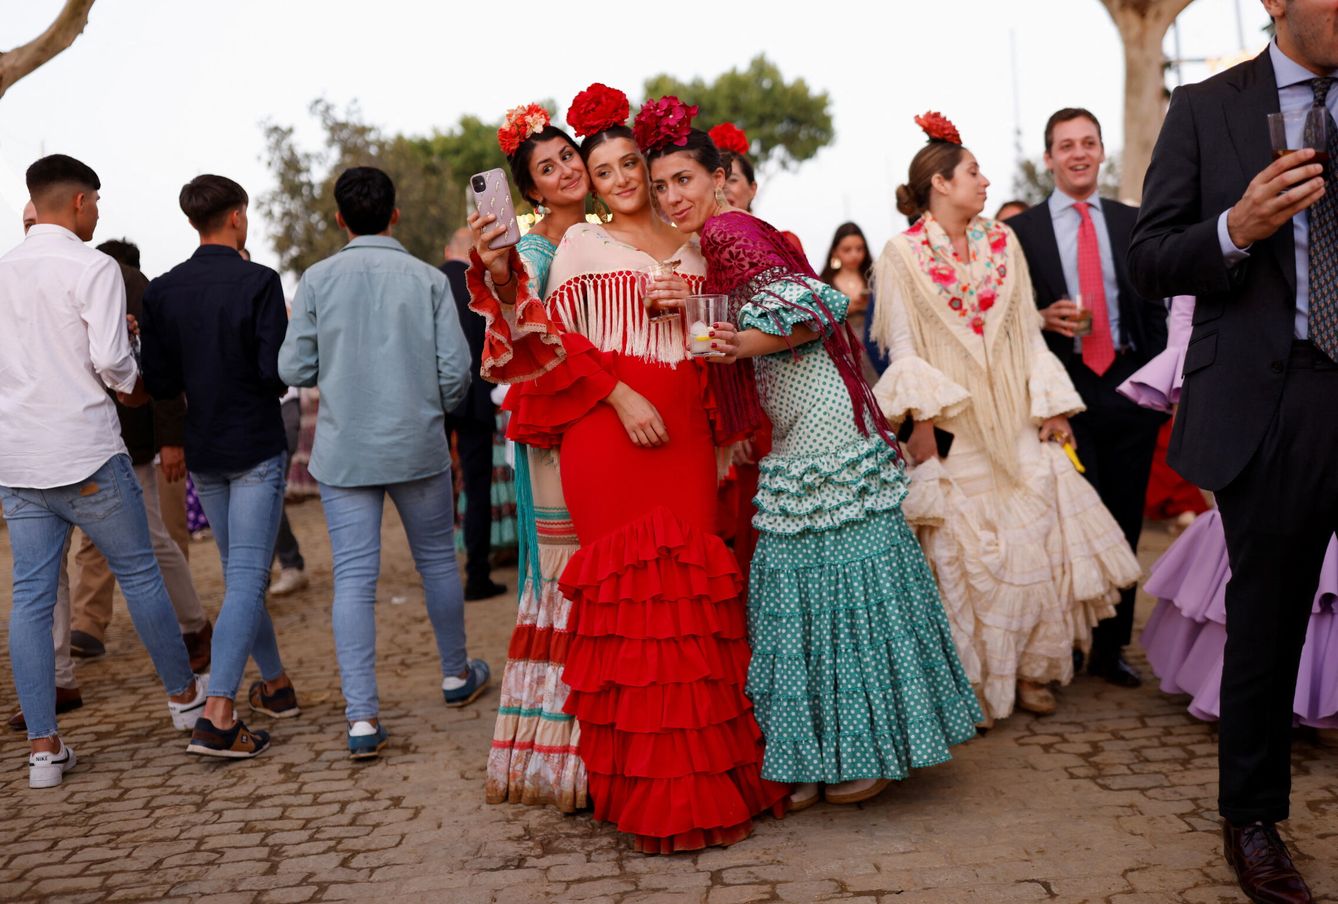 La temporada alta de la moda flamenca comienza con la Feria de Sevilla. (Reuters/ Marcelo del Pozo)